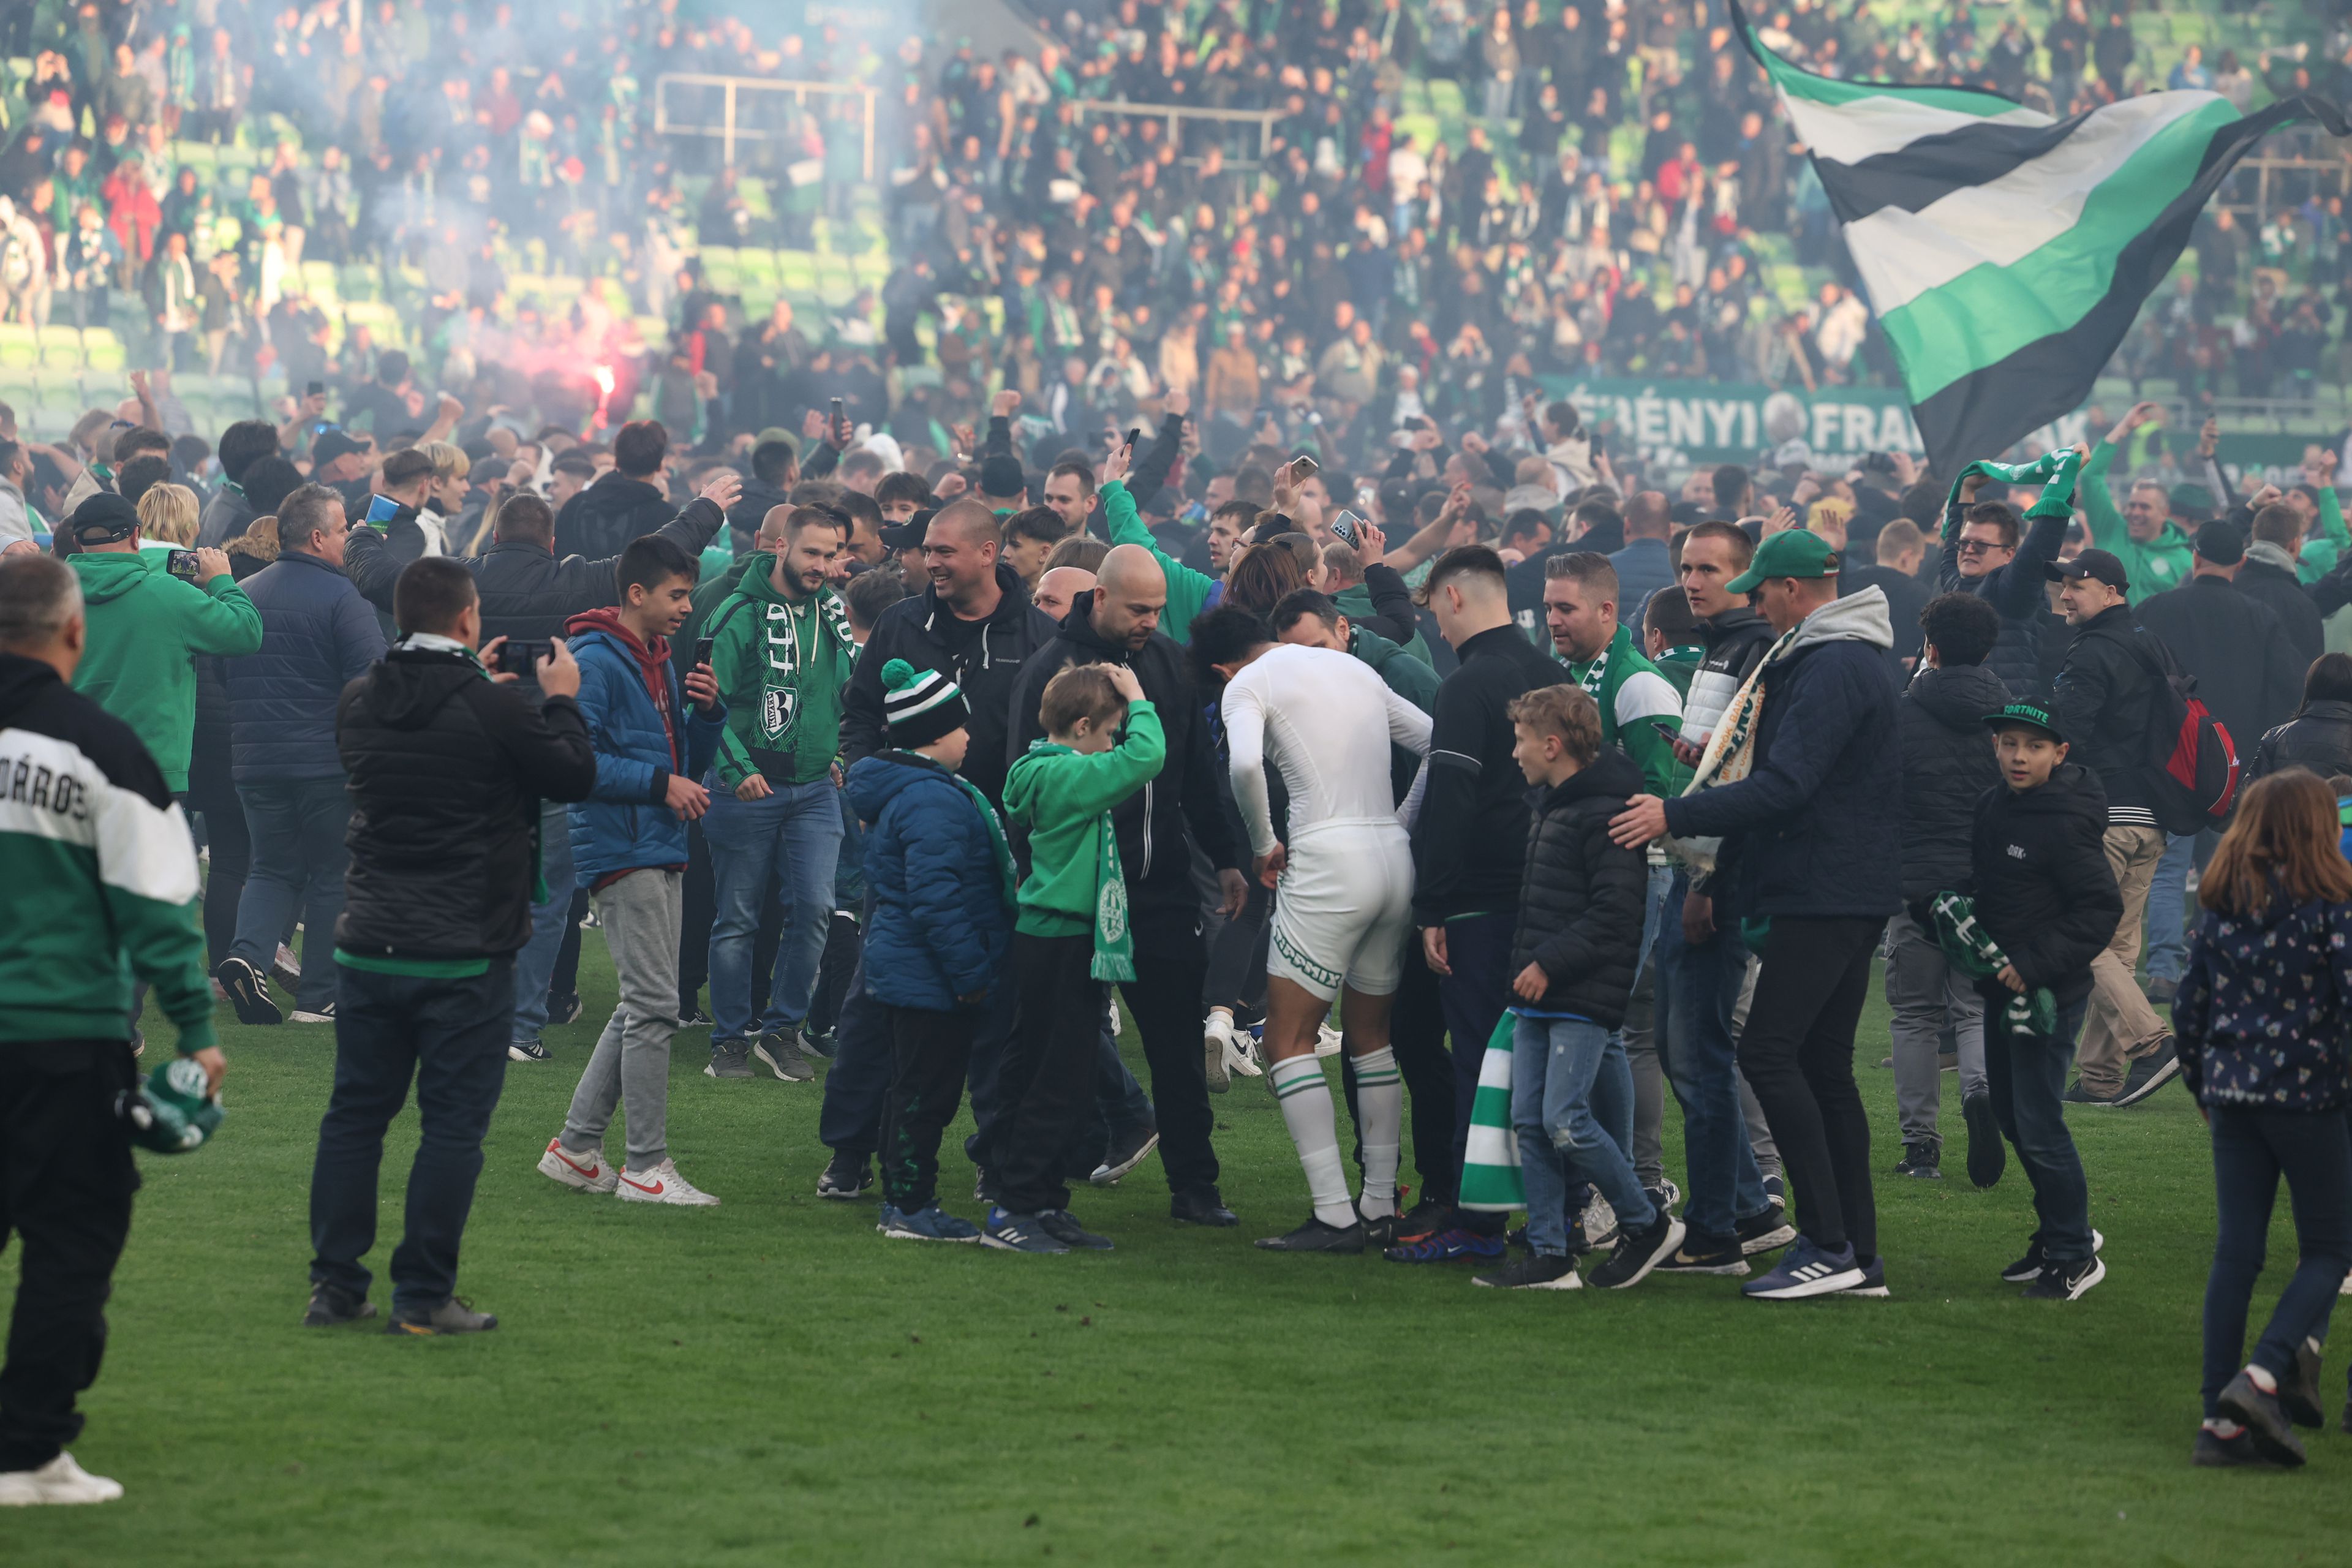 A bajnoki címet ünneplő zöld-fehér drukkerek ellepték a pályát a Kisvárda elleni meccs lefújása után Fotó: Pozsonyi Zita